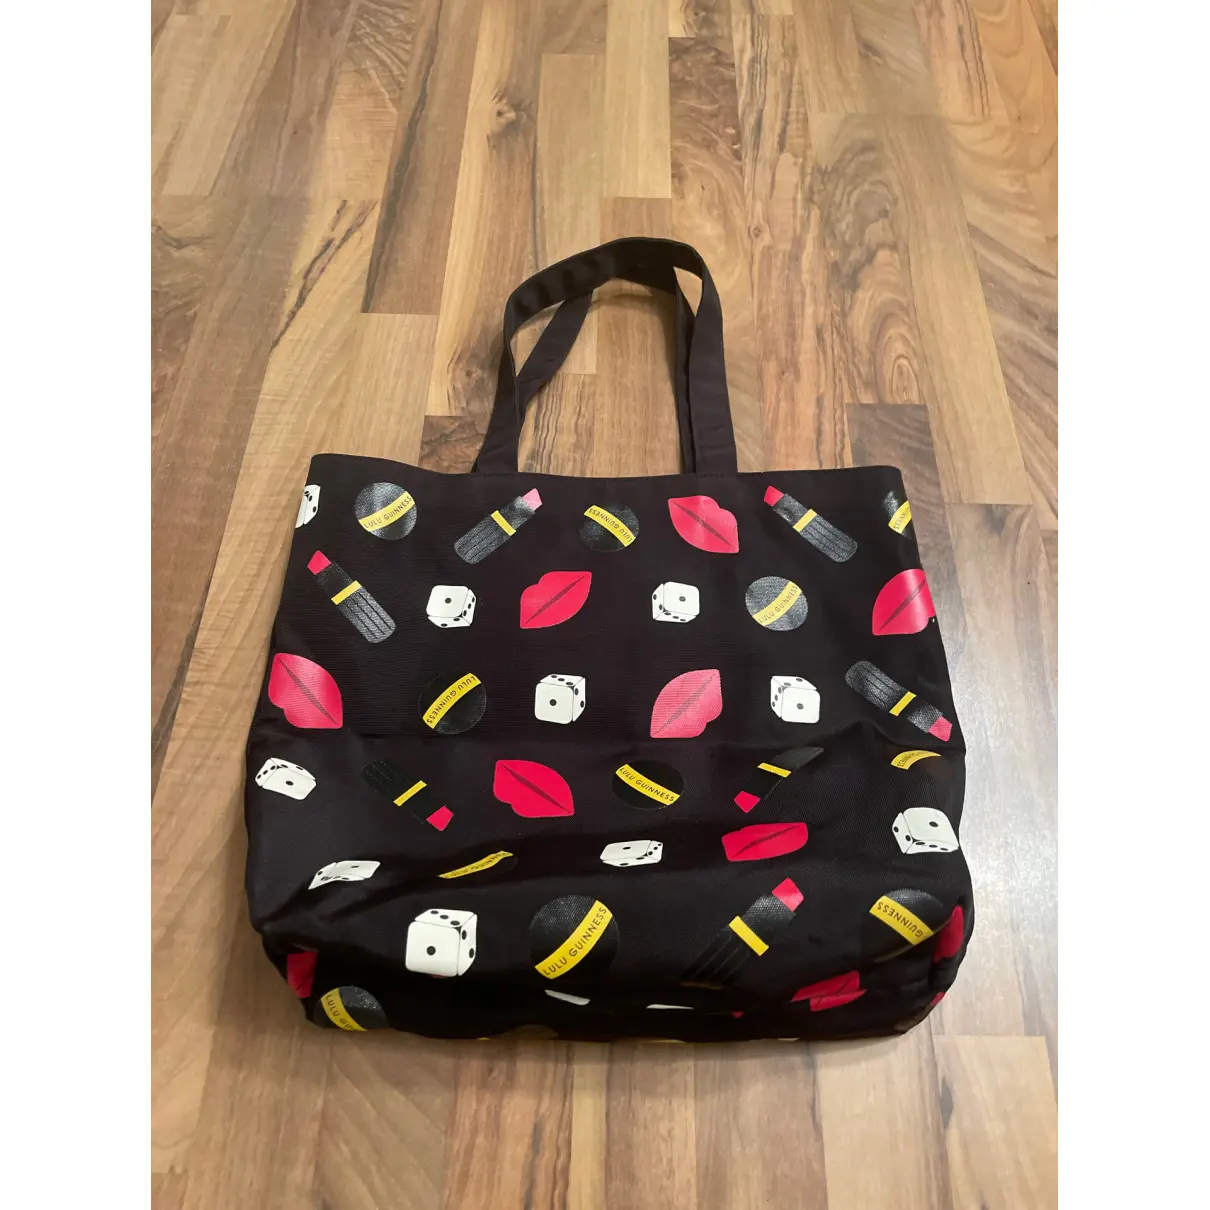 Buy Lulu Guinness Cloth handbag online